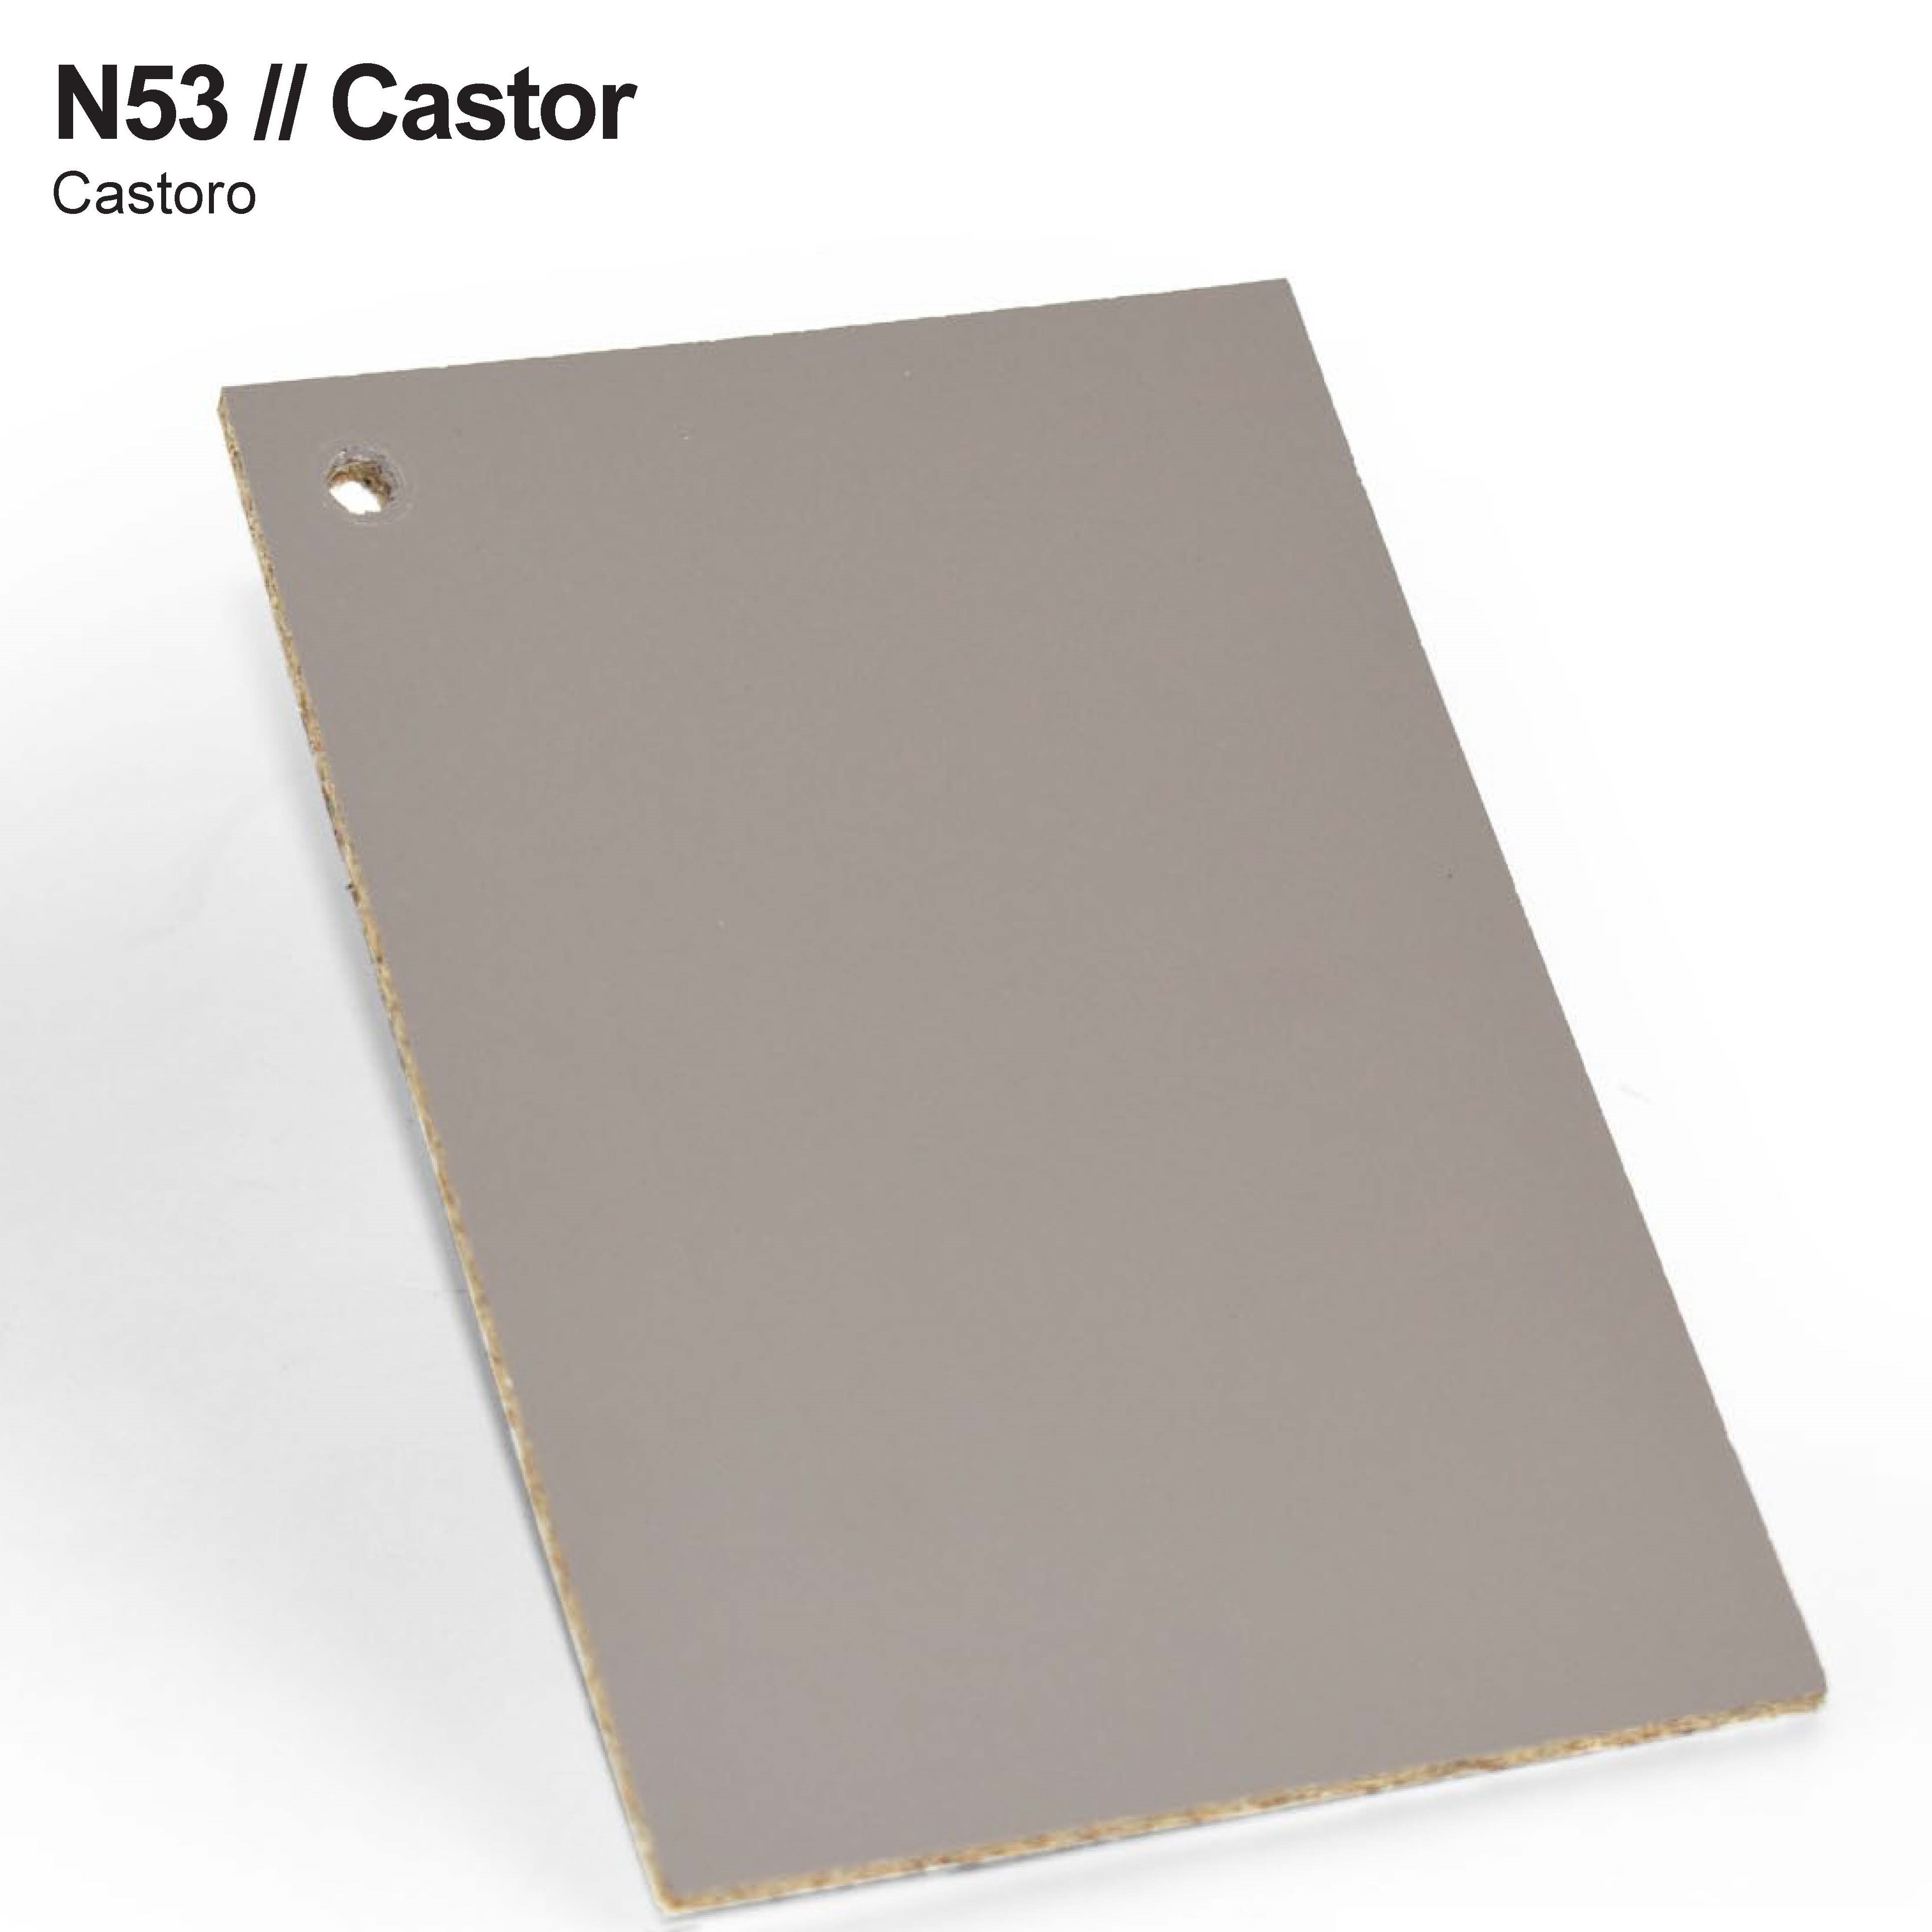 Castor N53 